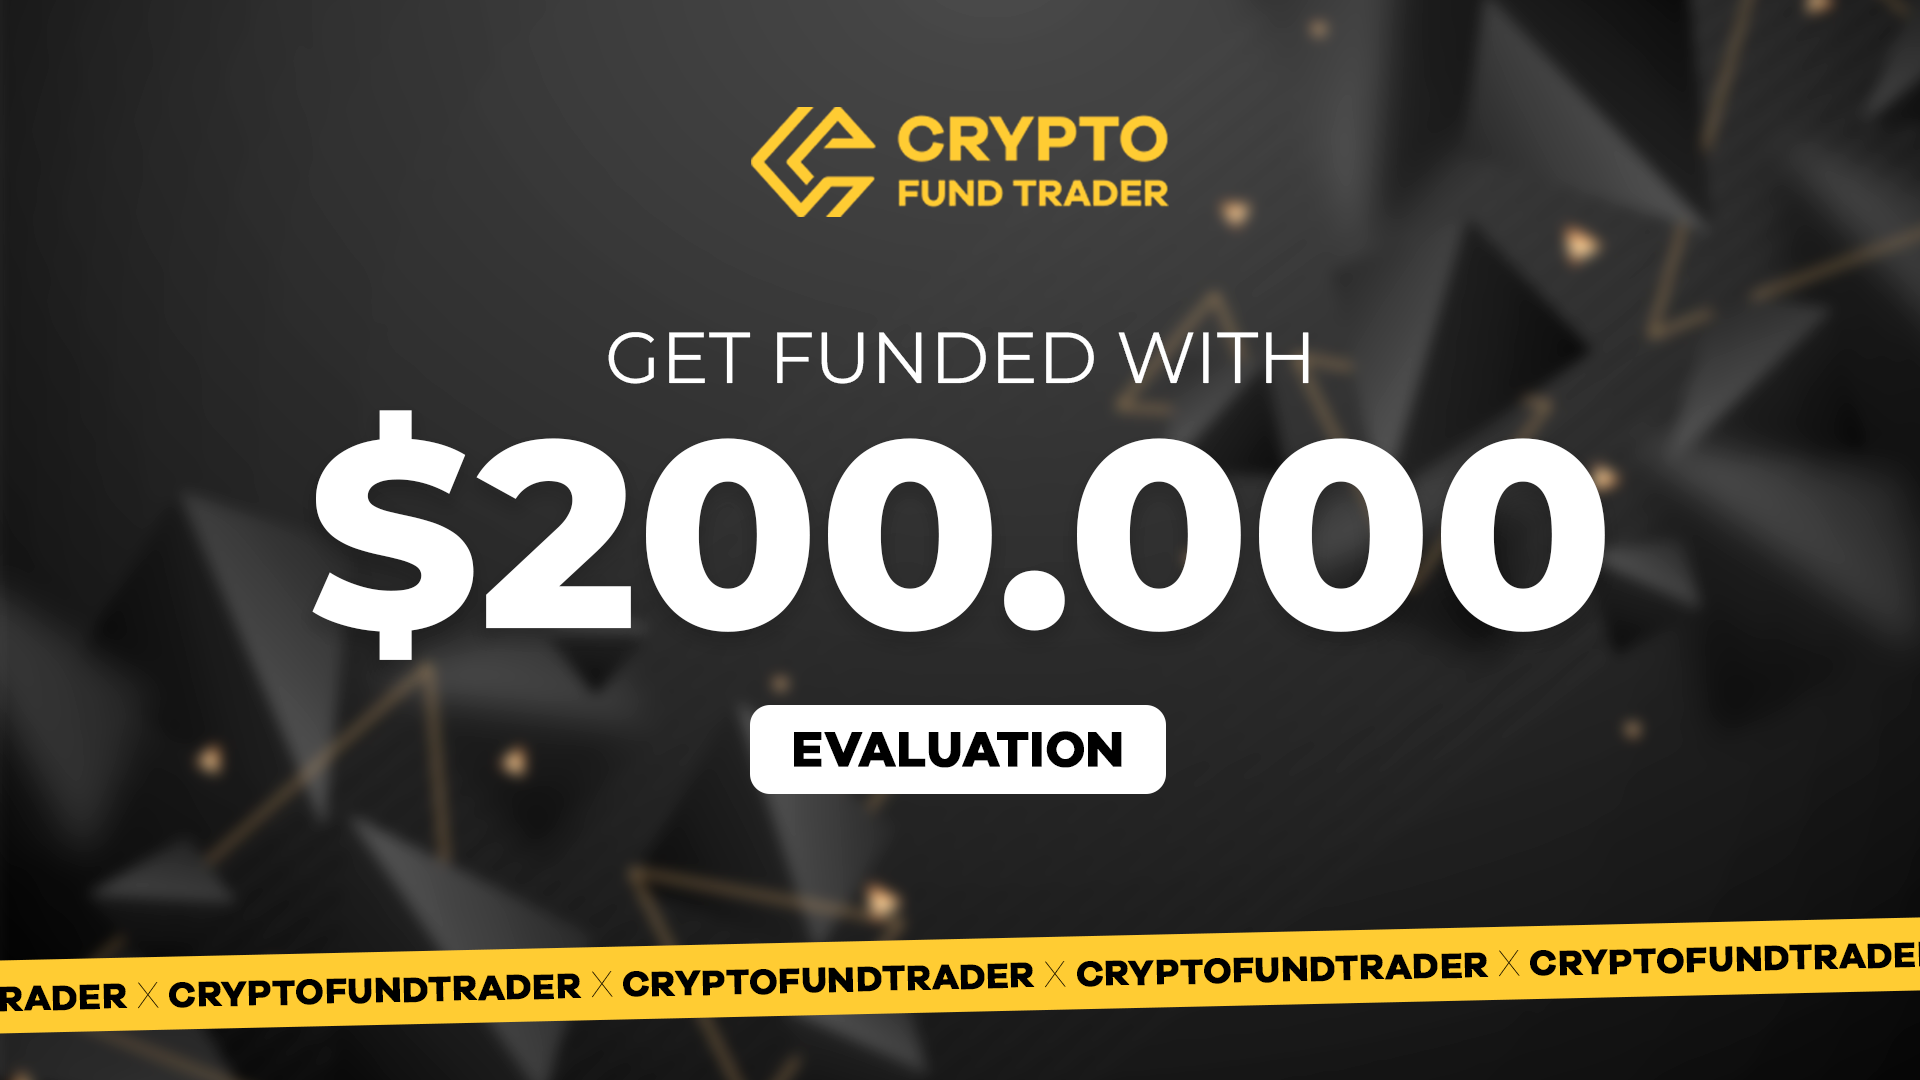 Crypto Fund Trader - $200.000 Evaluation Voucher 1127.7$